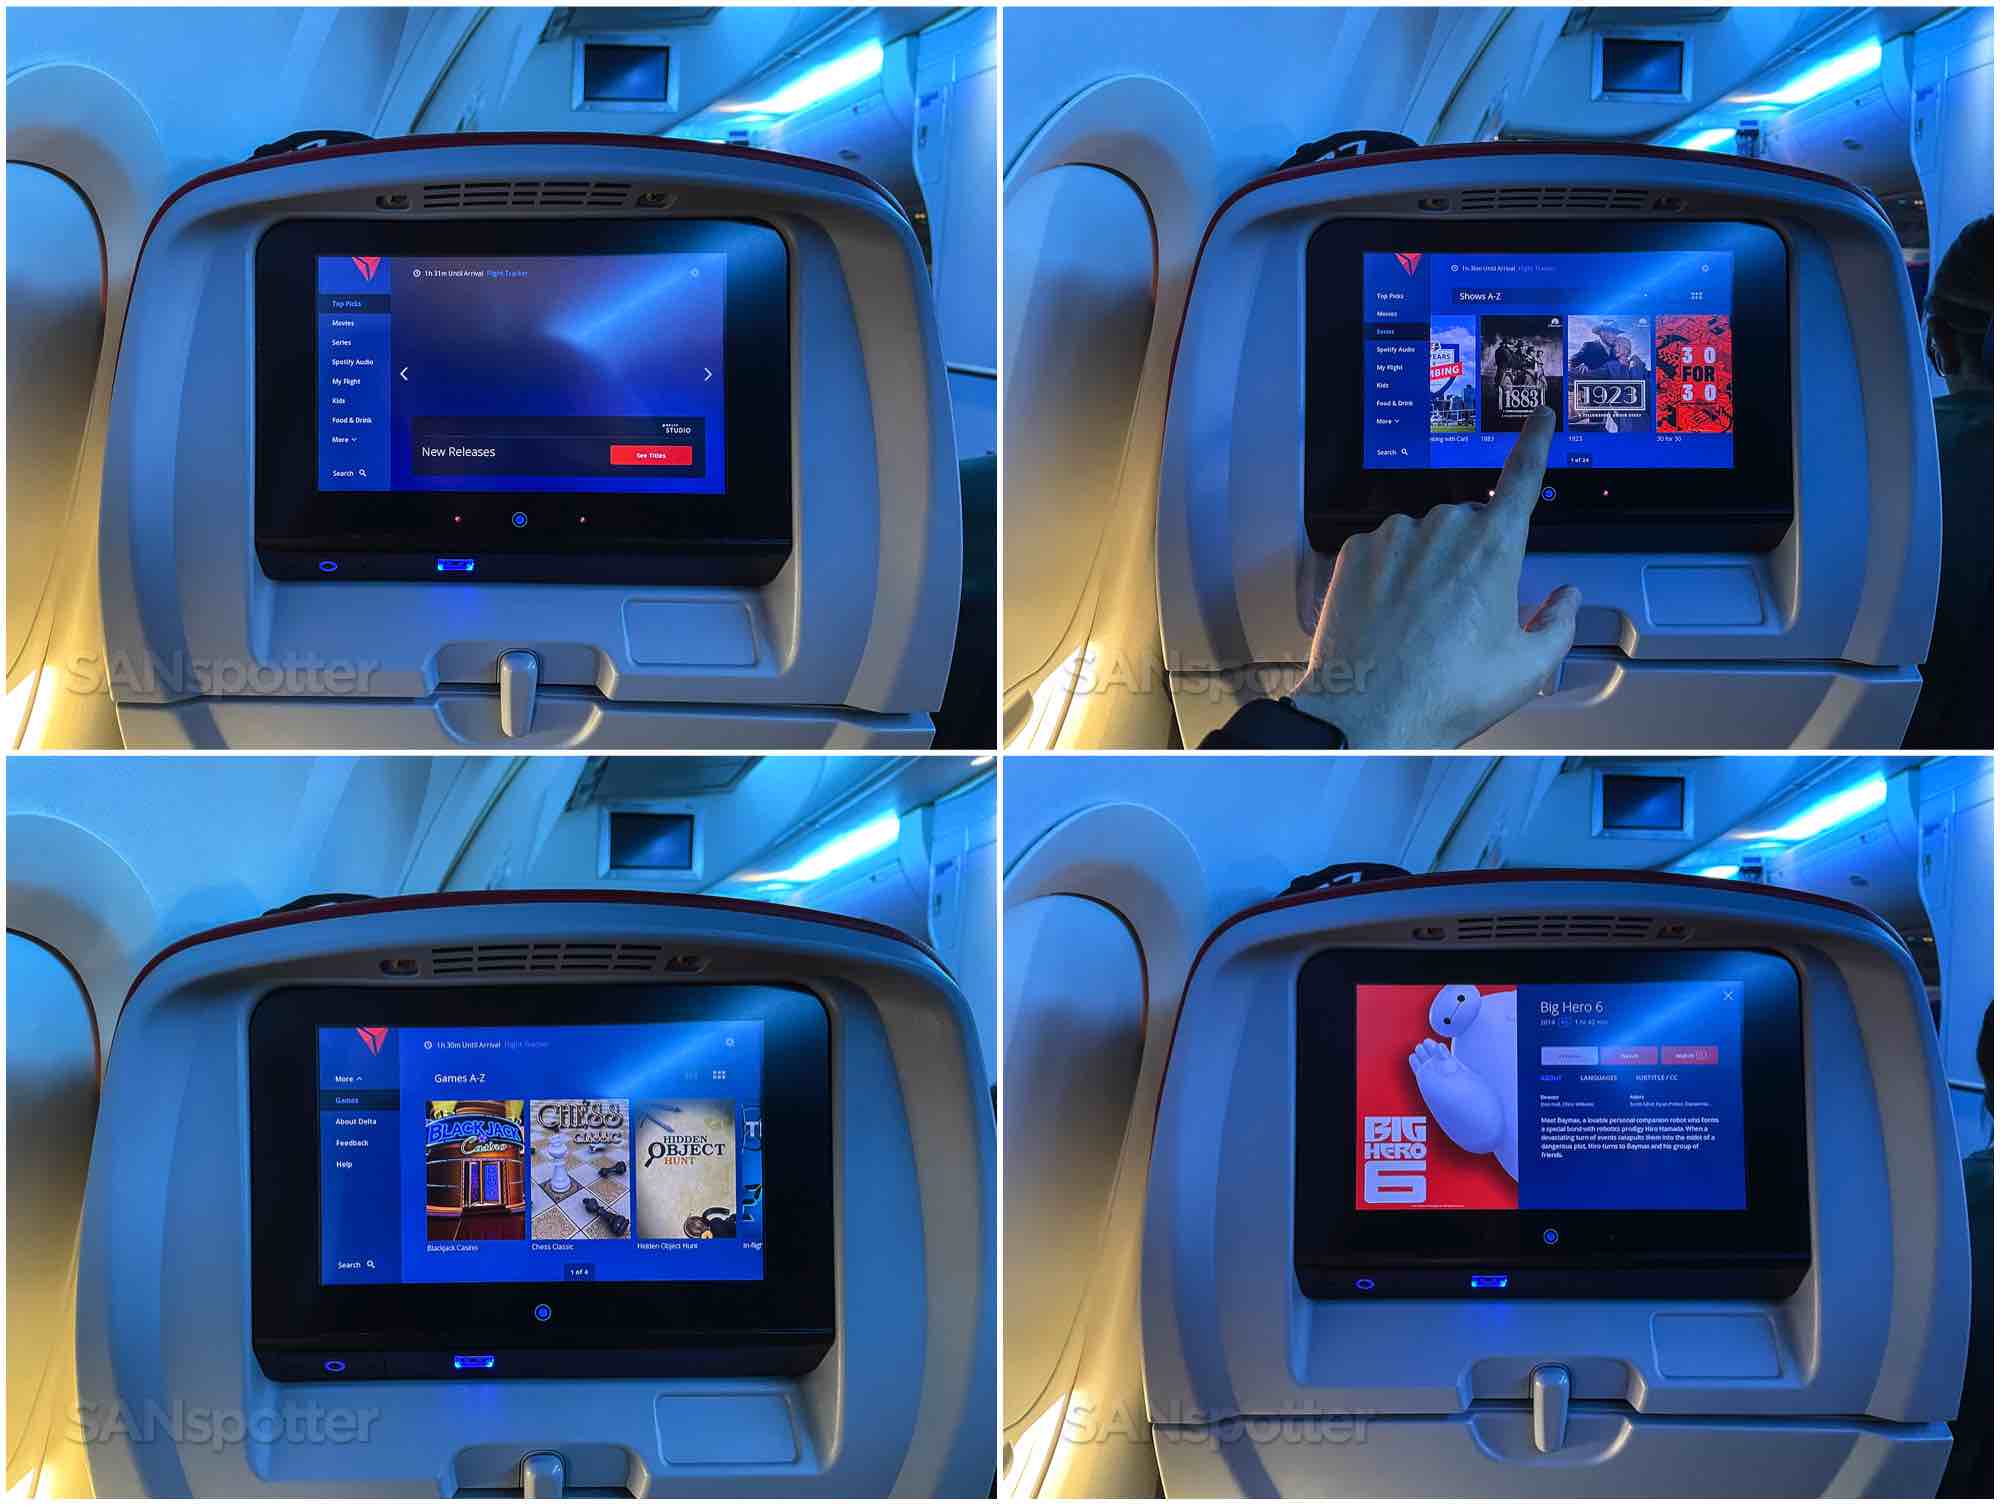 Delta 757-200 Comfort Plus Delta in-flight entertainment screens and menus